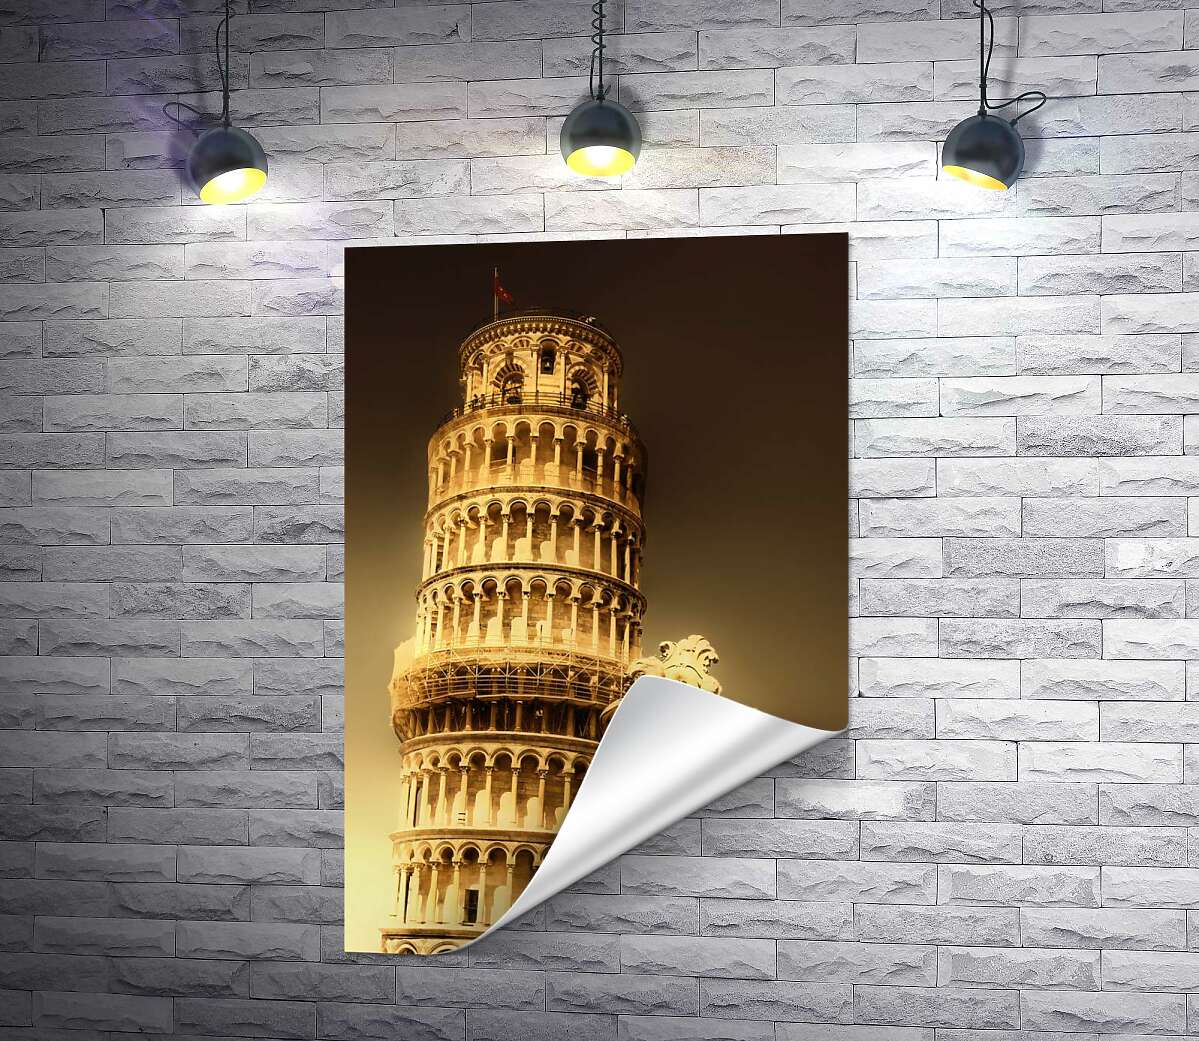 друк Пізанська вежа (Pisa tower) видніється через фонтан Путті (Fontana dei Putti)